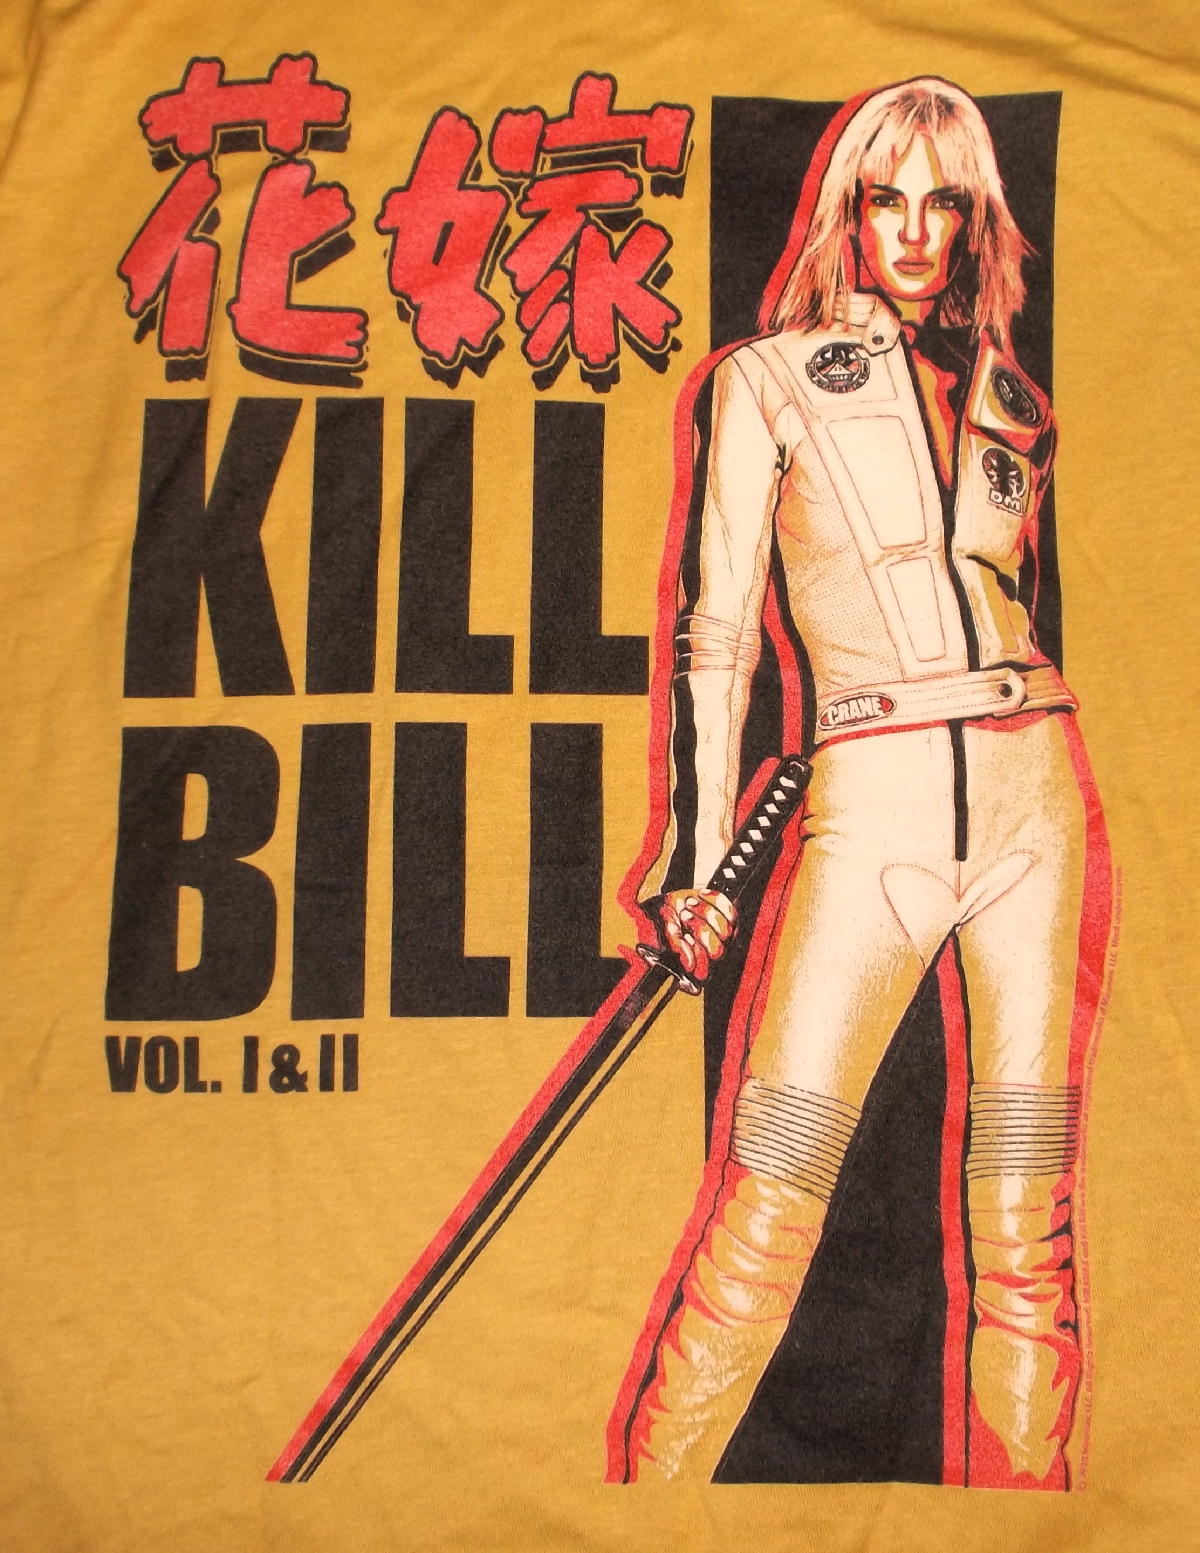 バンドTシャツ,通販,キル ビル,Kill Bill,Tシャツ,クエンティン 